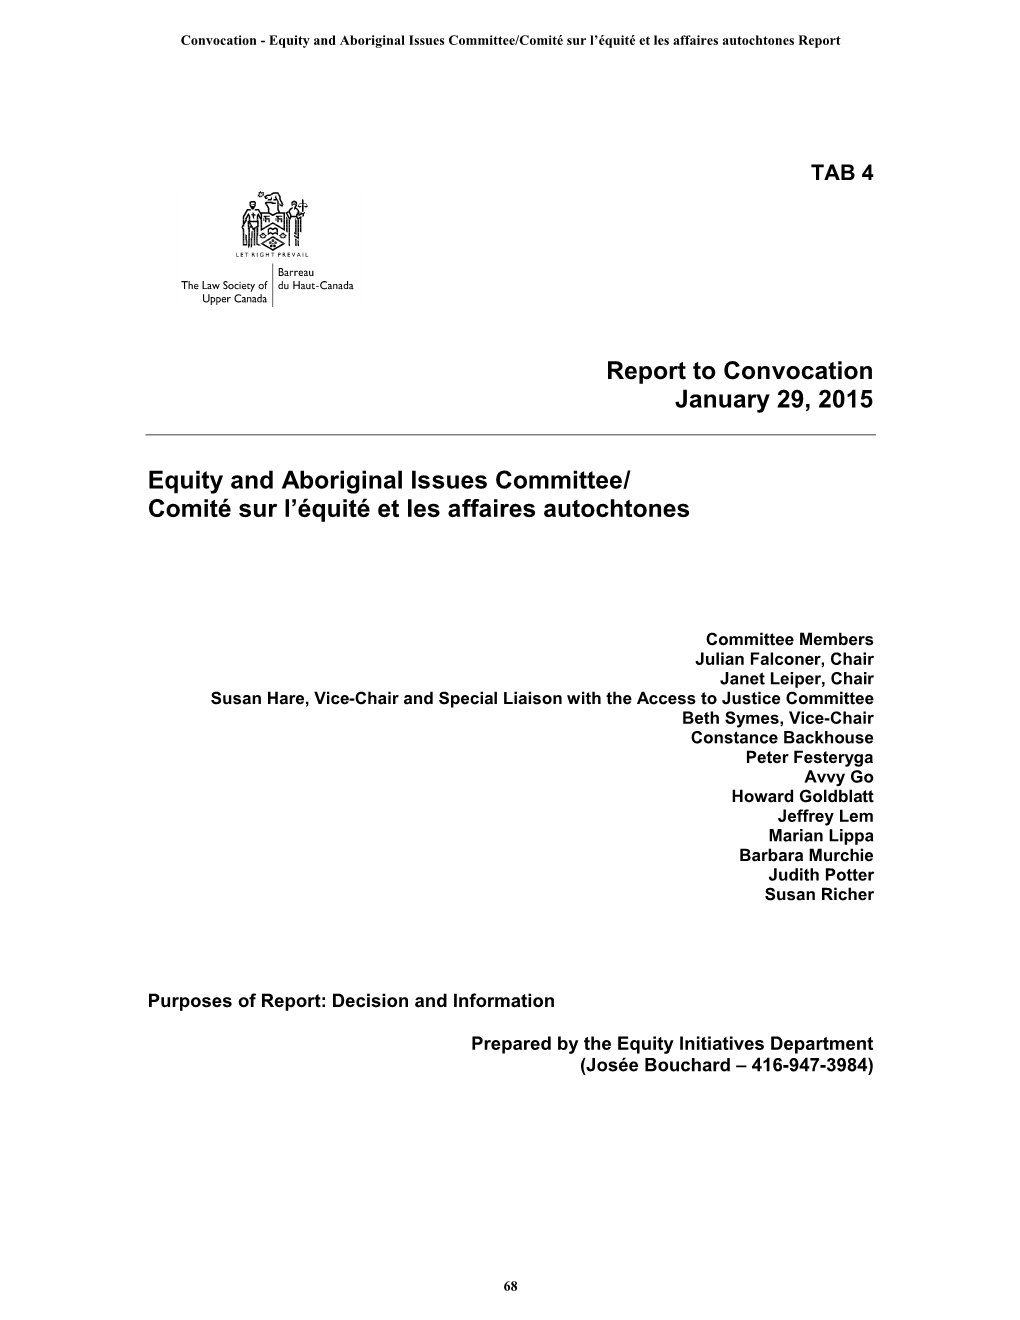 Convocation - Equity and Aboriginal Issues Committee/Comité Sur L’Équité Et Les Affaires Autochtones Report